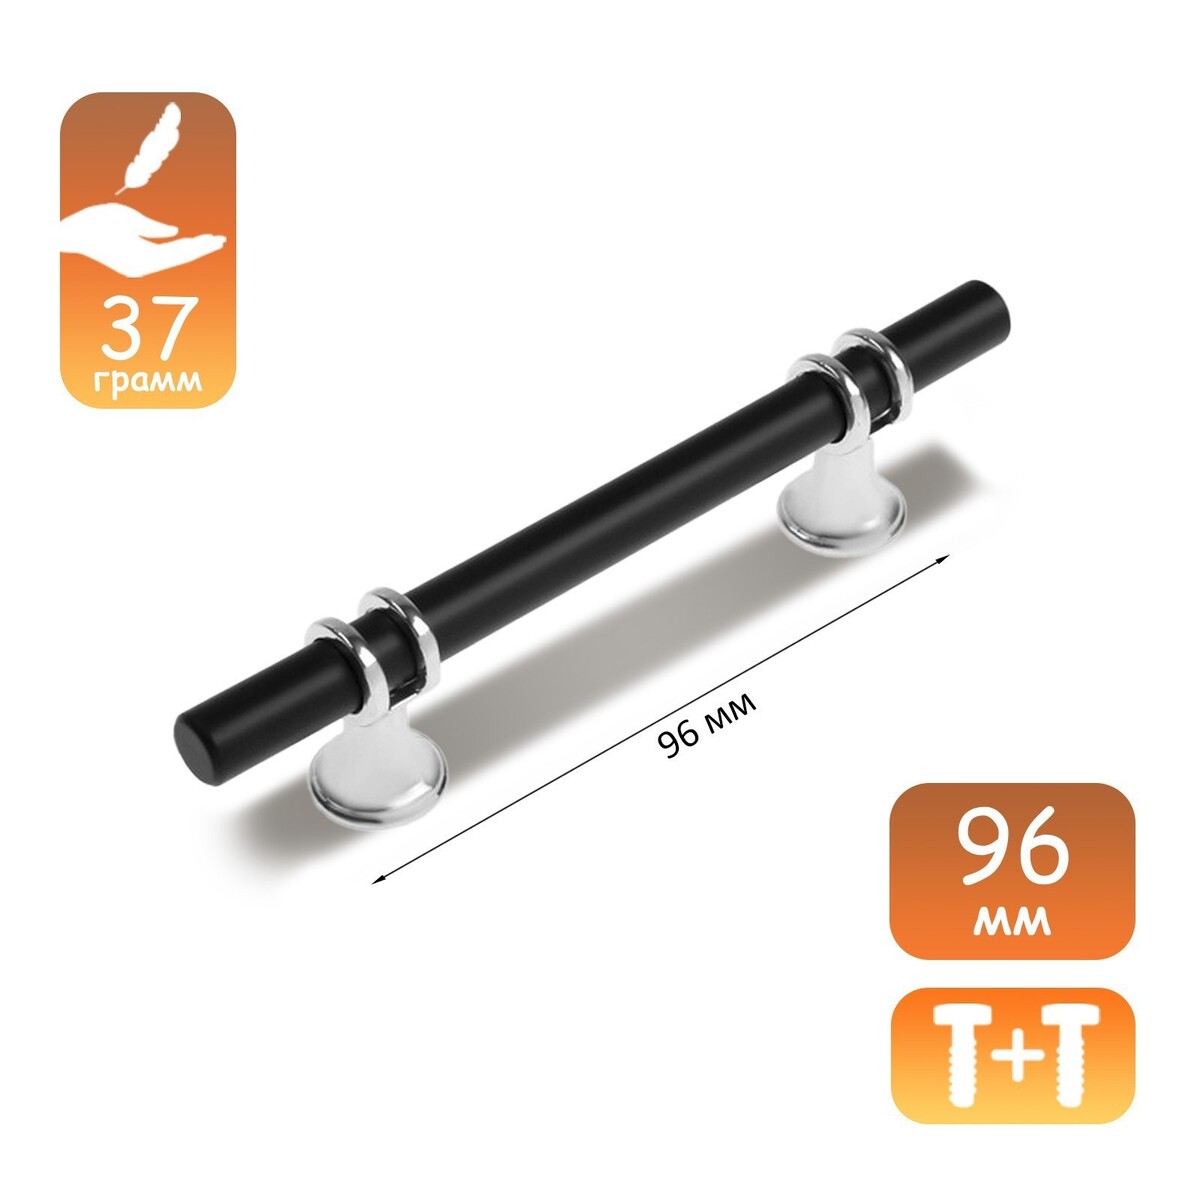 Ручка скоба cappio, м/о 96 мм, d=12 mm, пластик, цвет хром/черный ручка кнопка cappio pk106 d 12 мм пластик прозрачный хром